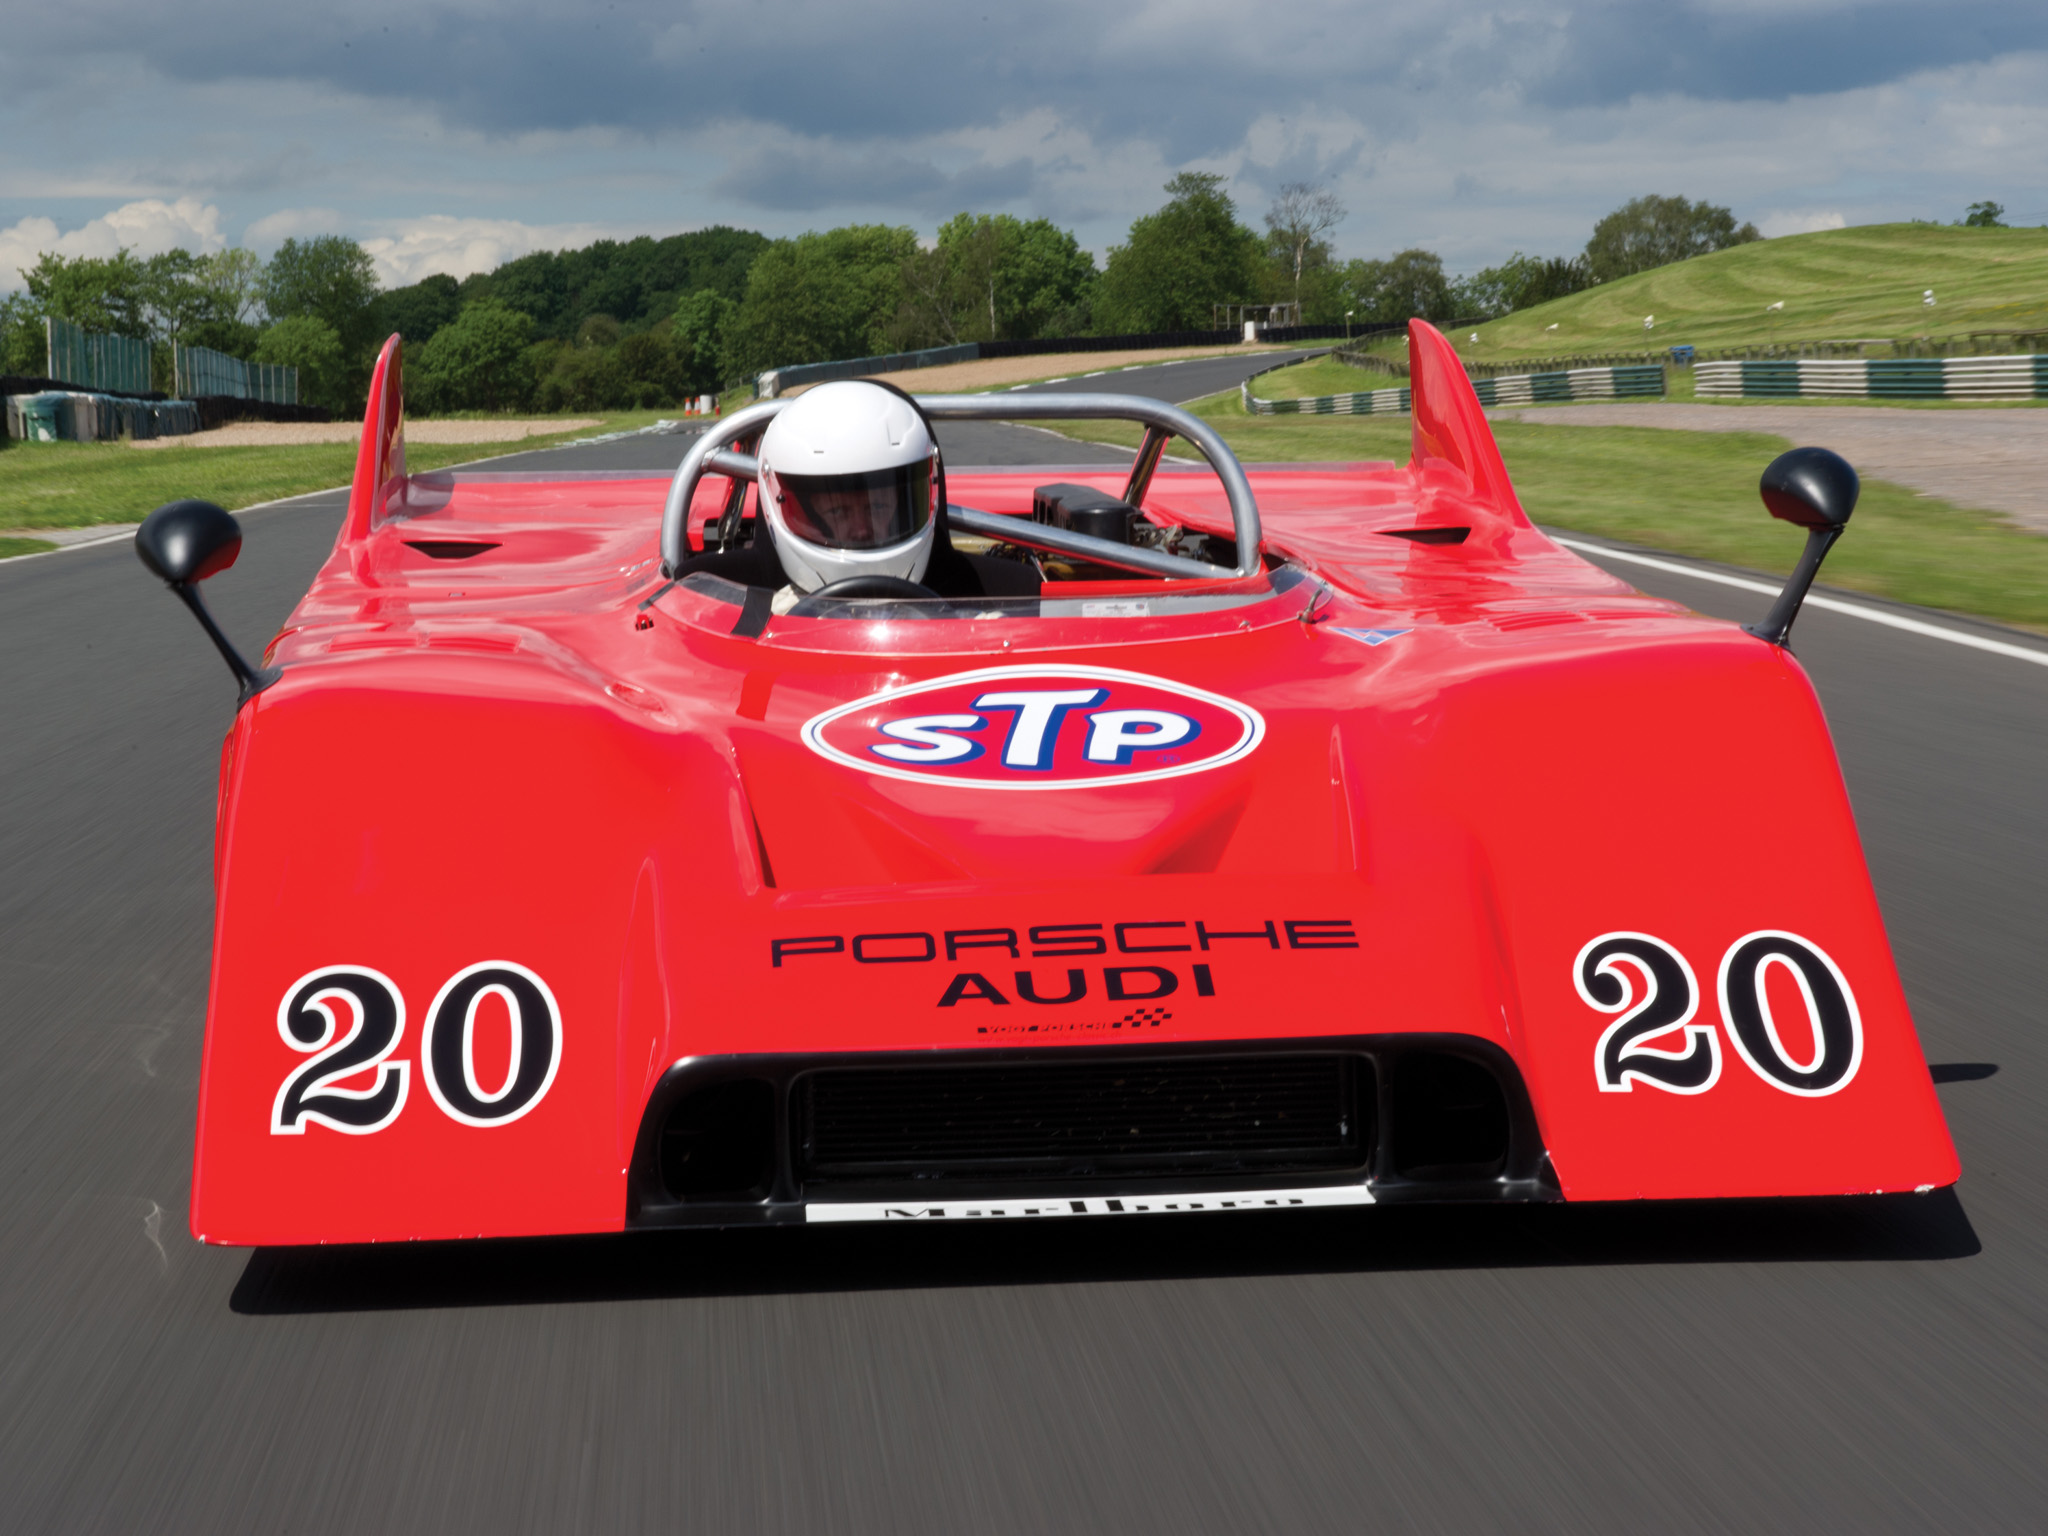 1971, Porsche, 917 10, Can am, Spyder, 0, 02race, Racing, Classic Wallpaper